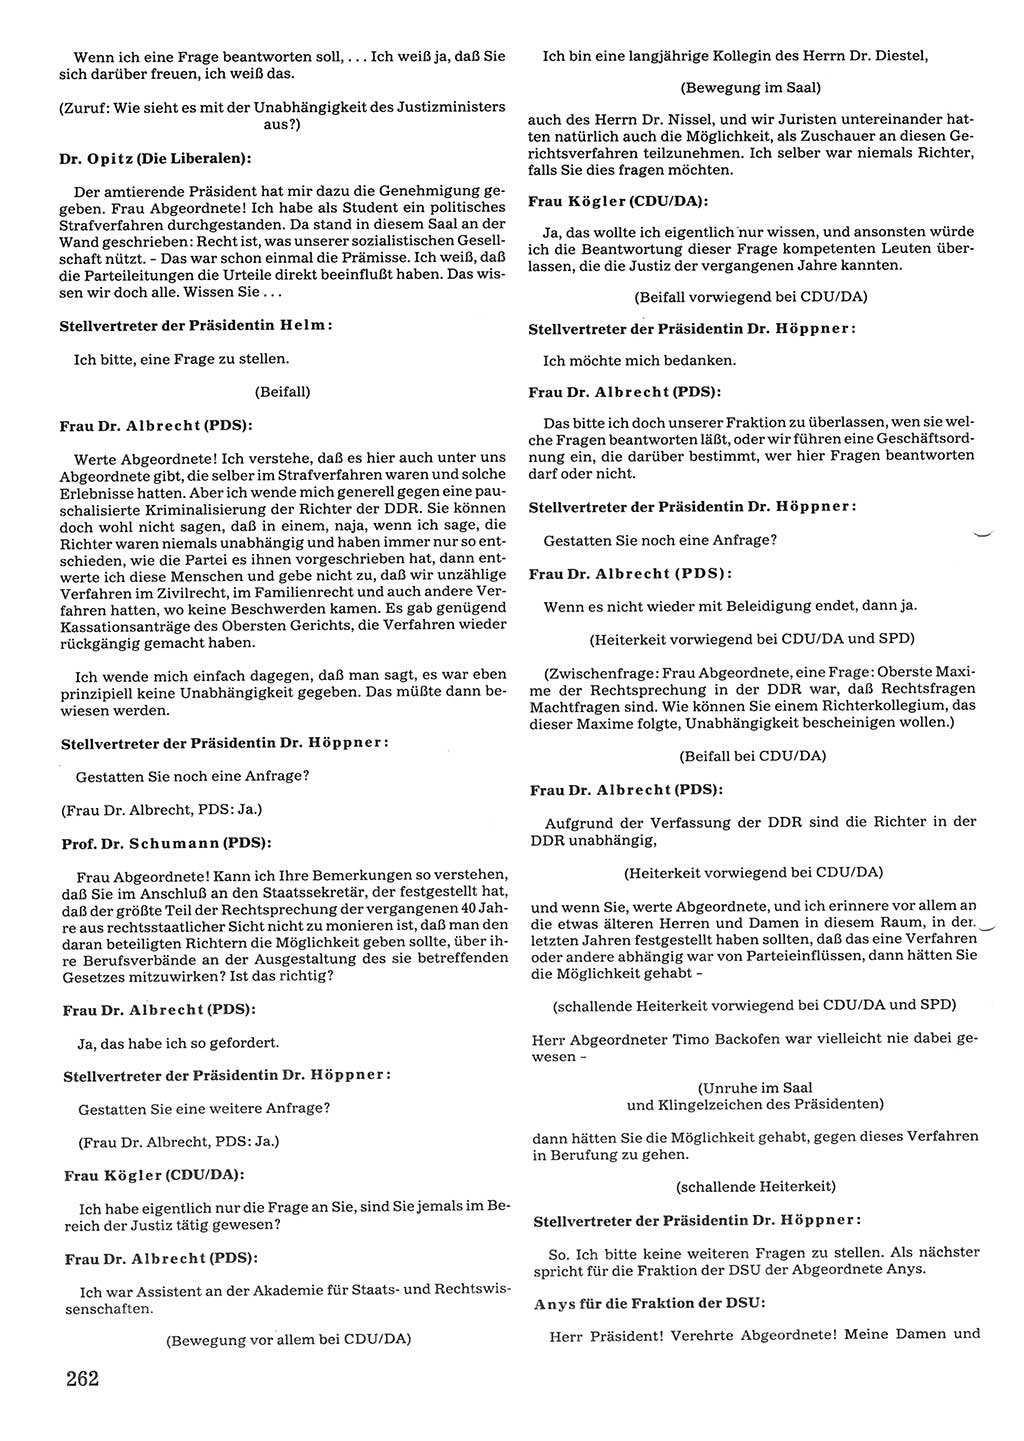 Tagungen der Volkskammer (VK) der Deutschen Demokratischen Republik (DDR), 10. Wahlperiode 1990, Seite 262 (VK. DDR 10. WP. 1990, Prot. Tg. 1-38, 5.4.-2.10.1990, S. 262)